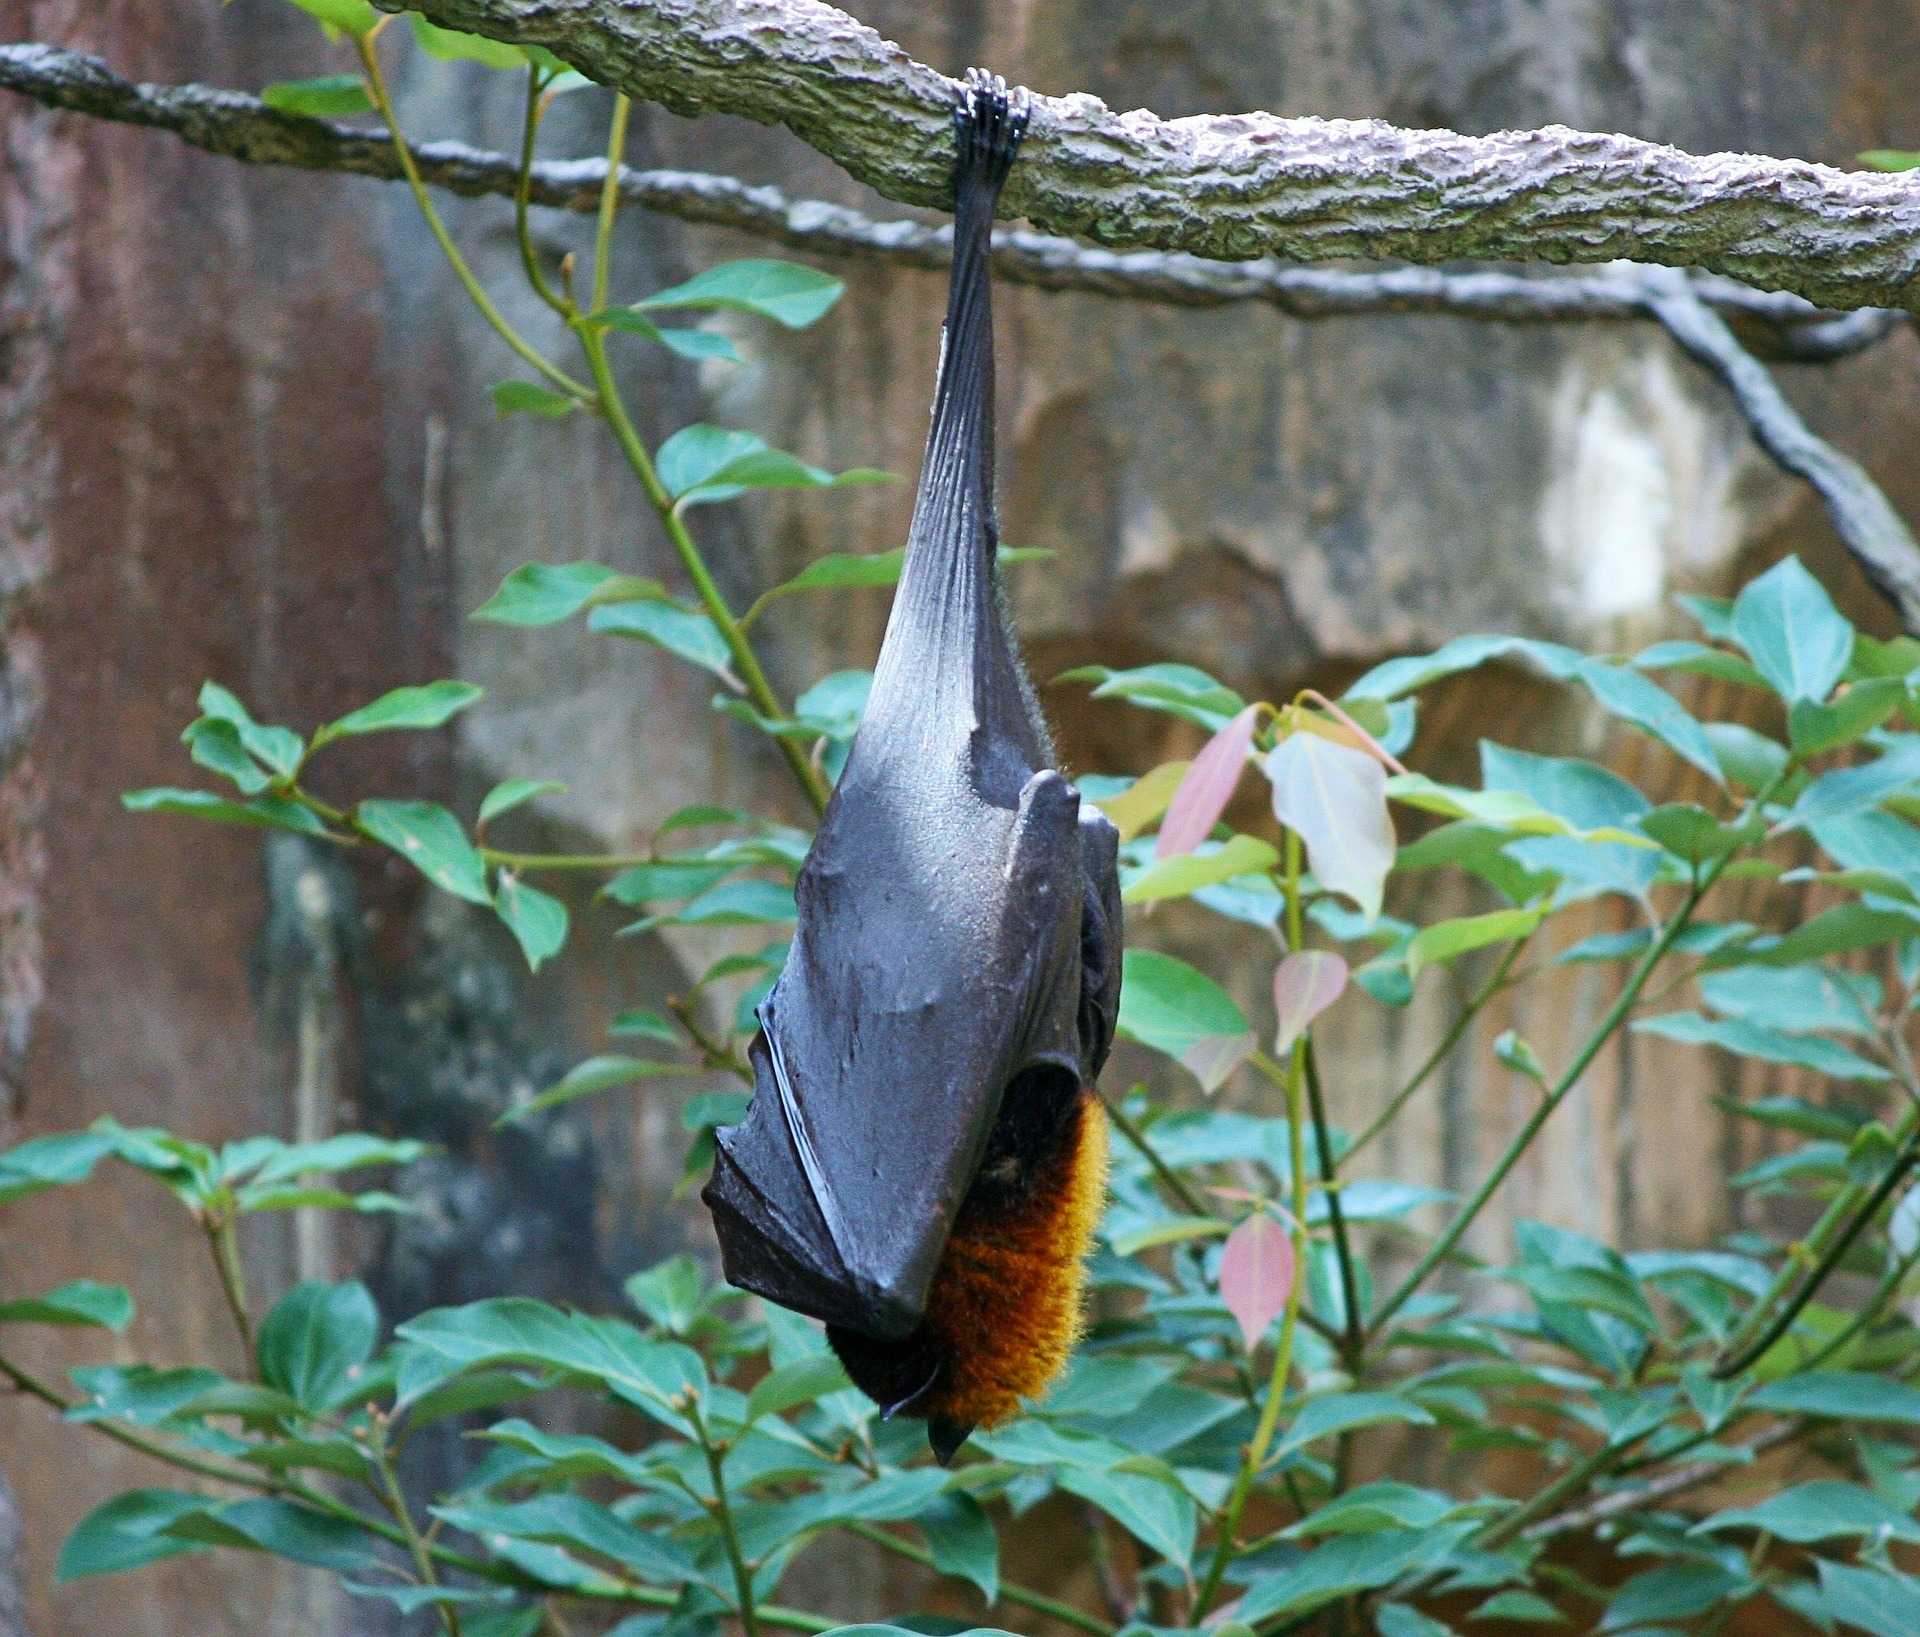 Bats, Fruit bat, Giant bat image.